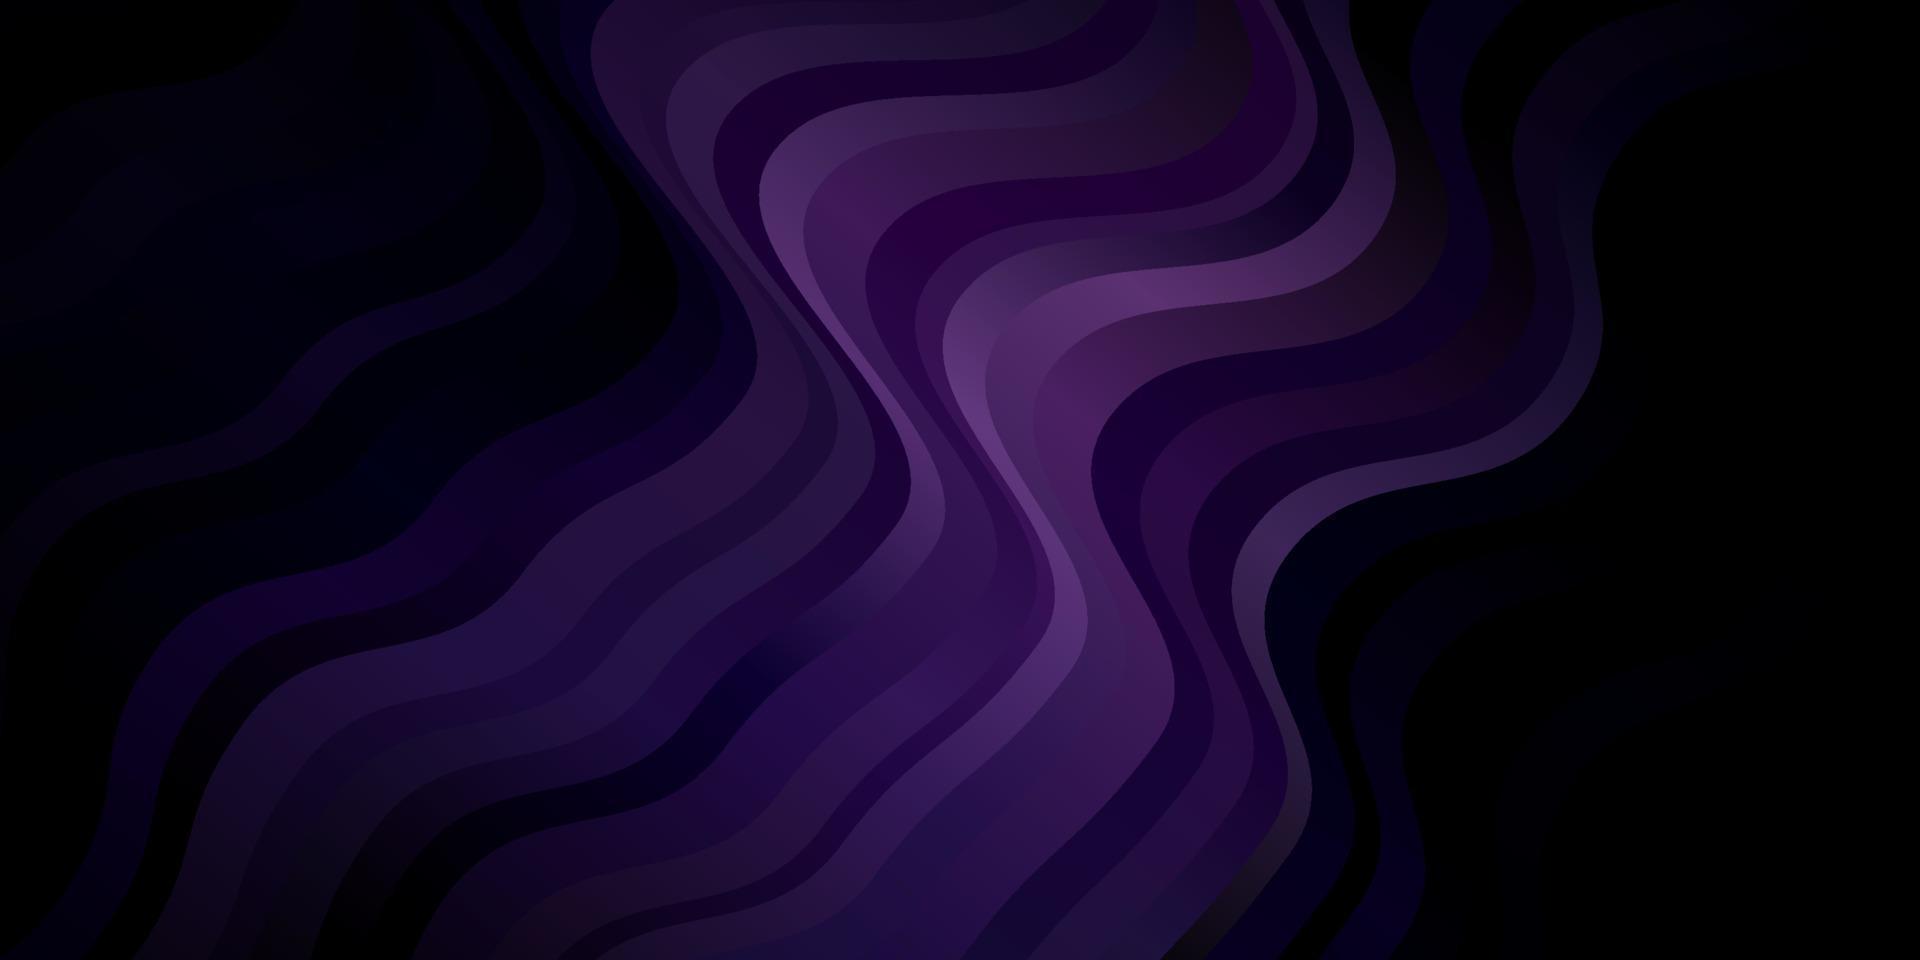 mörk lila vektor bakgrund med sneda linjer.